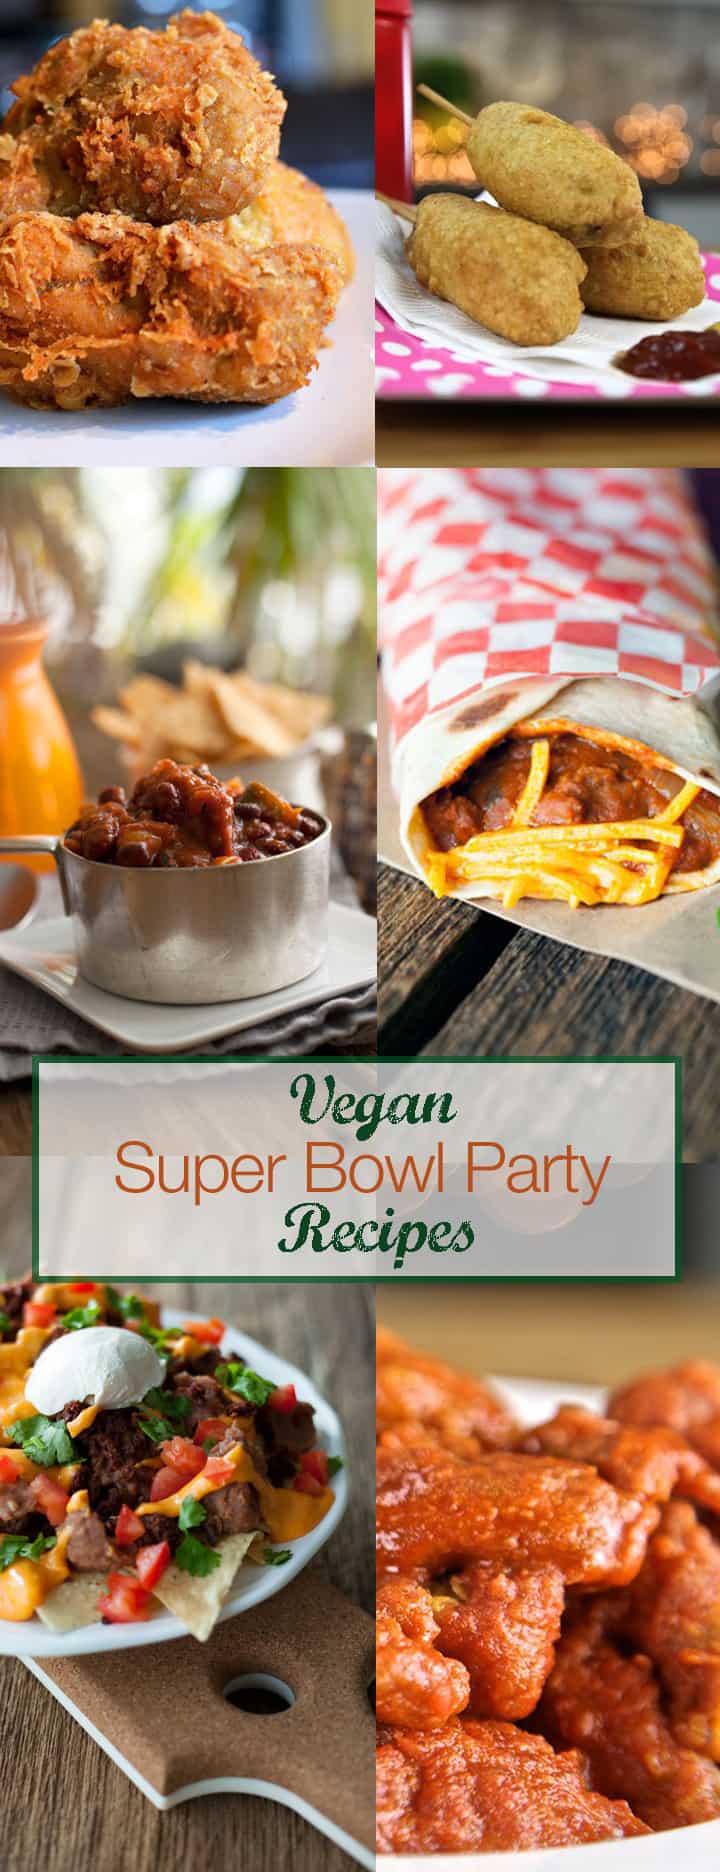 super bowl recipes vegan